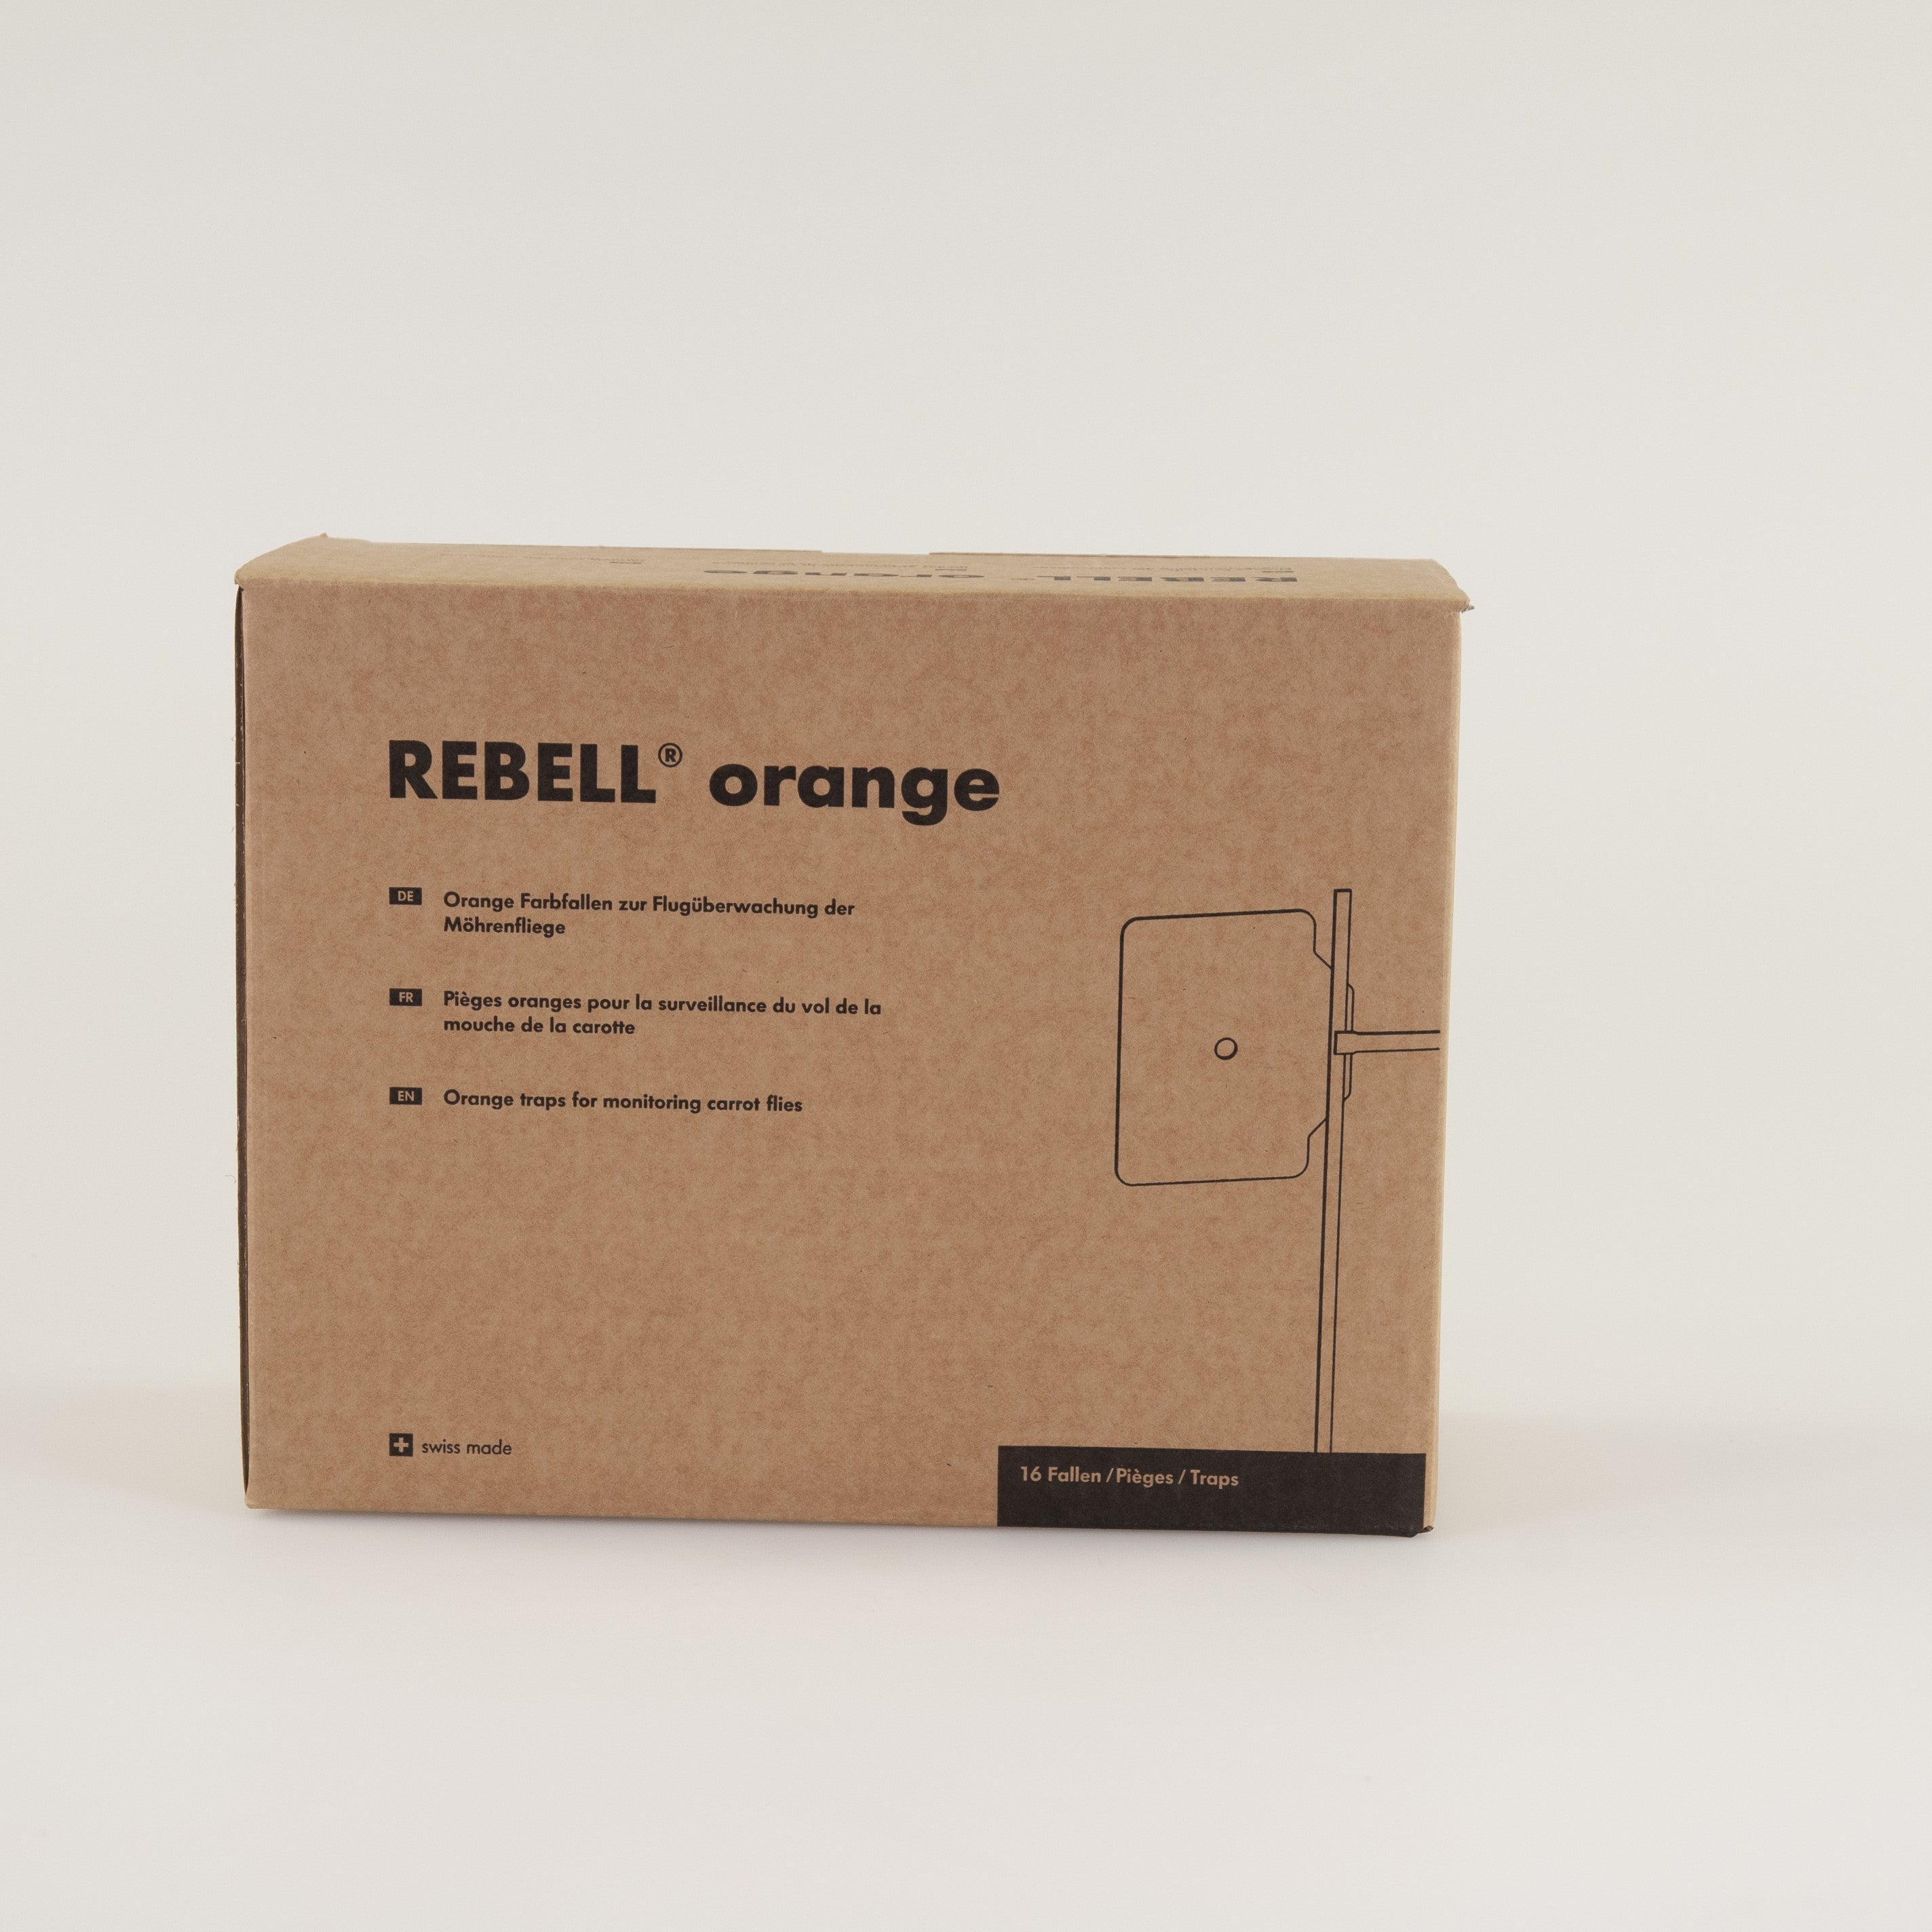 Verpakking Rebell Orange - de oranje plakval van Andermatt Nederland - wortelvlieg